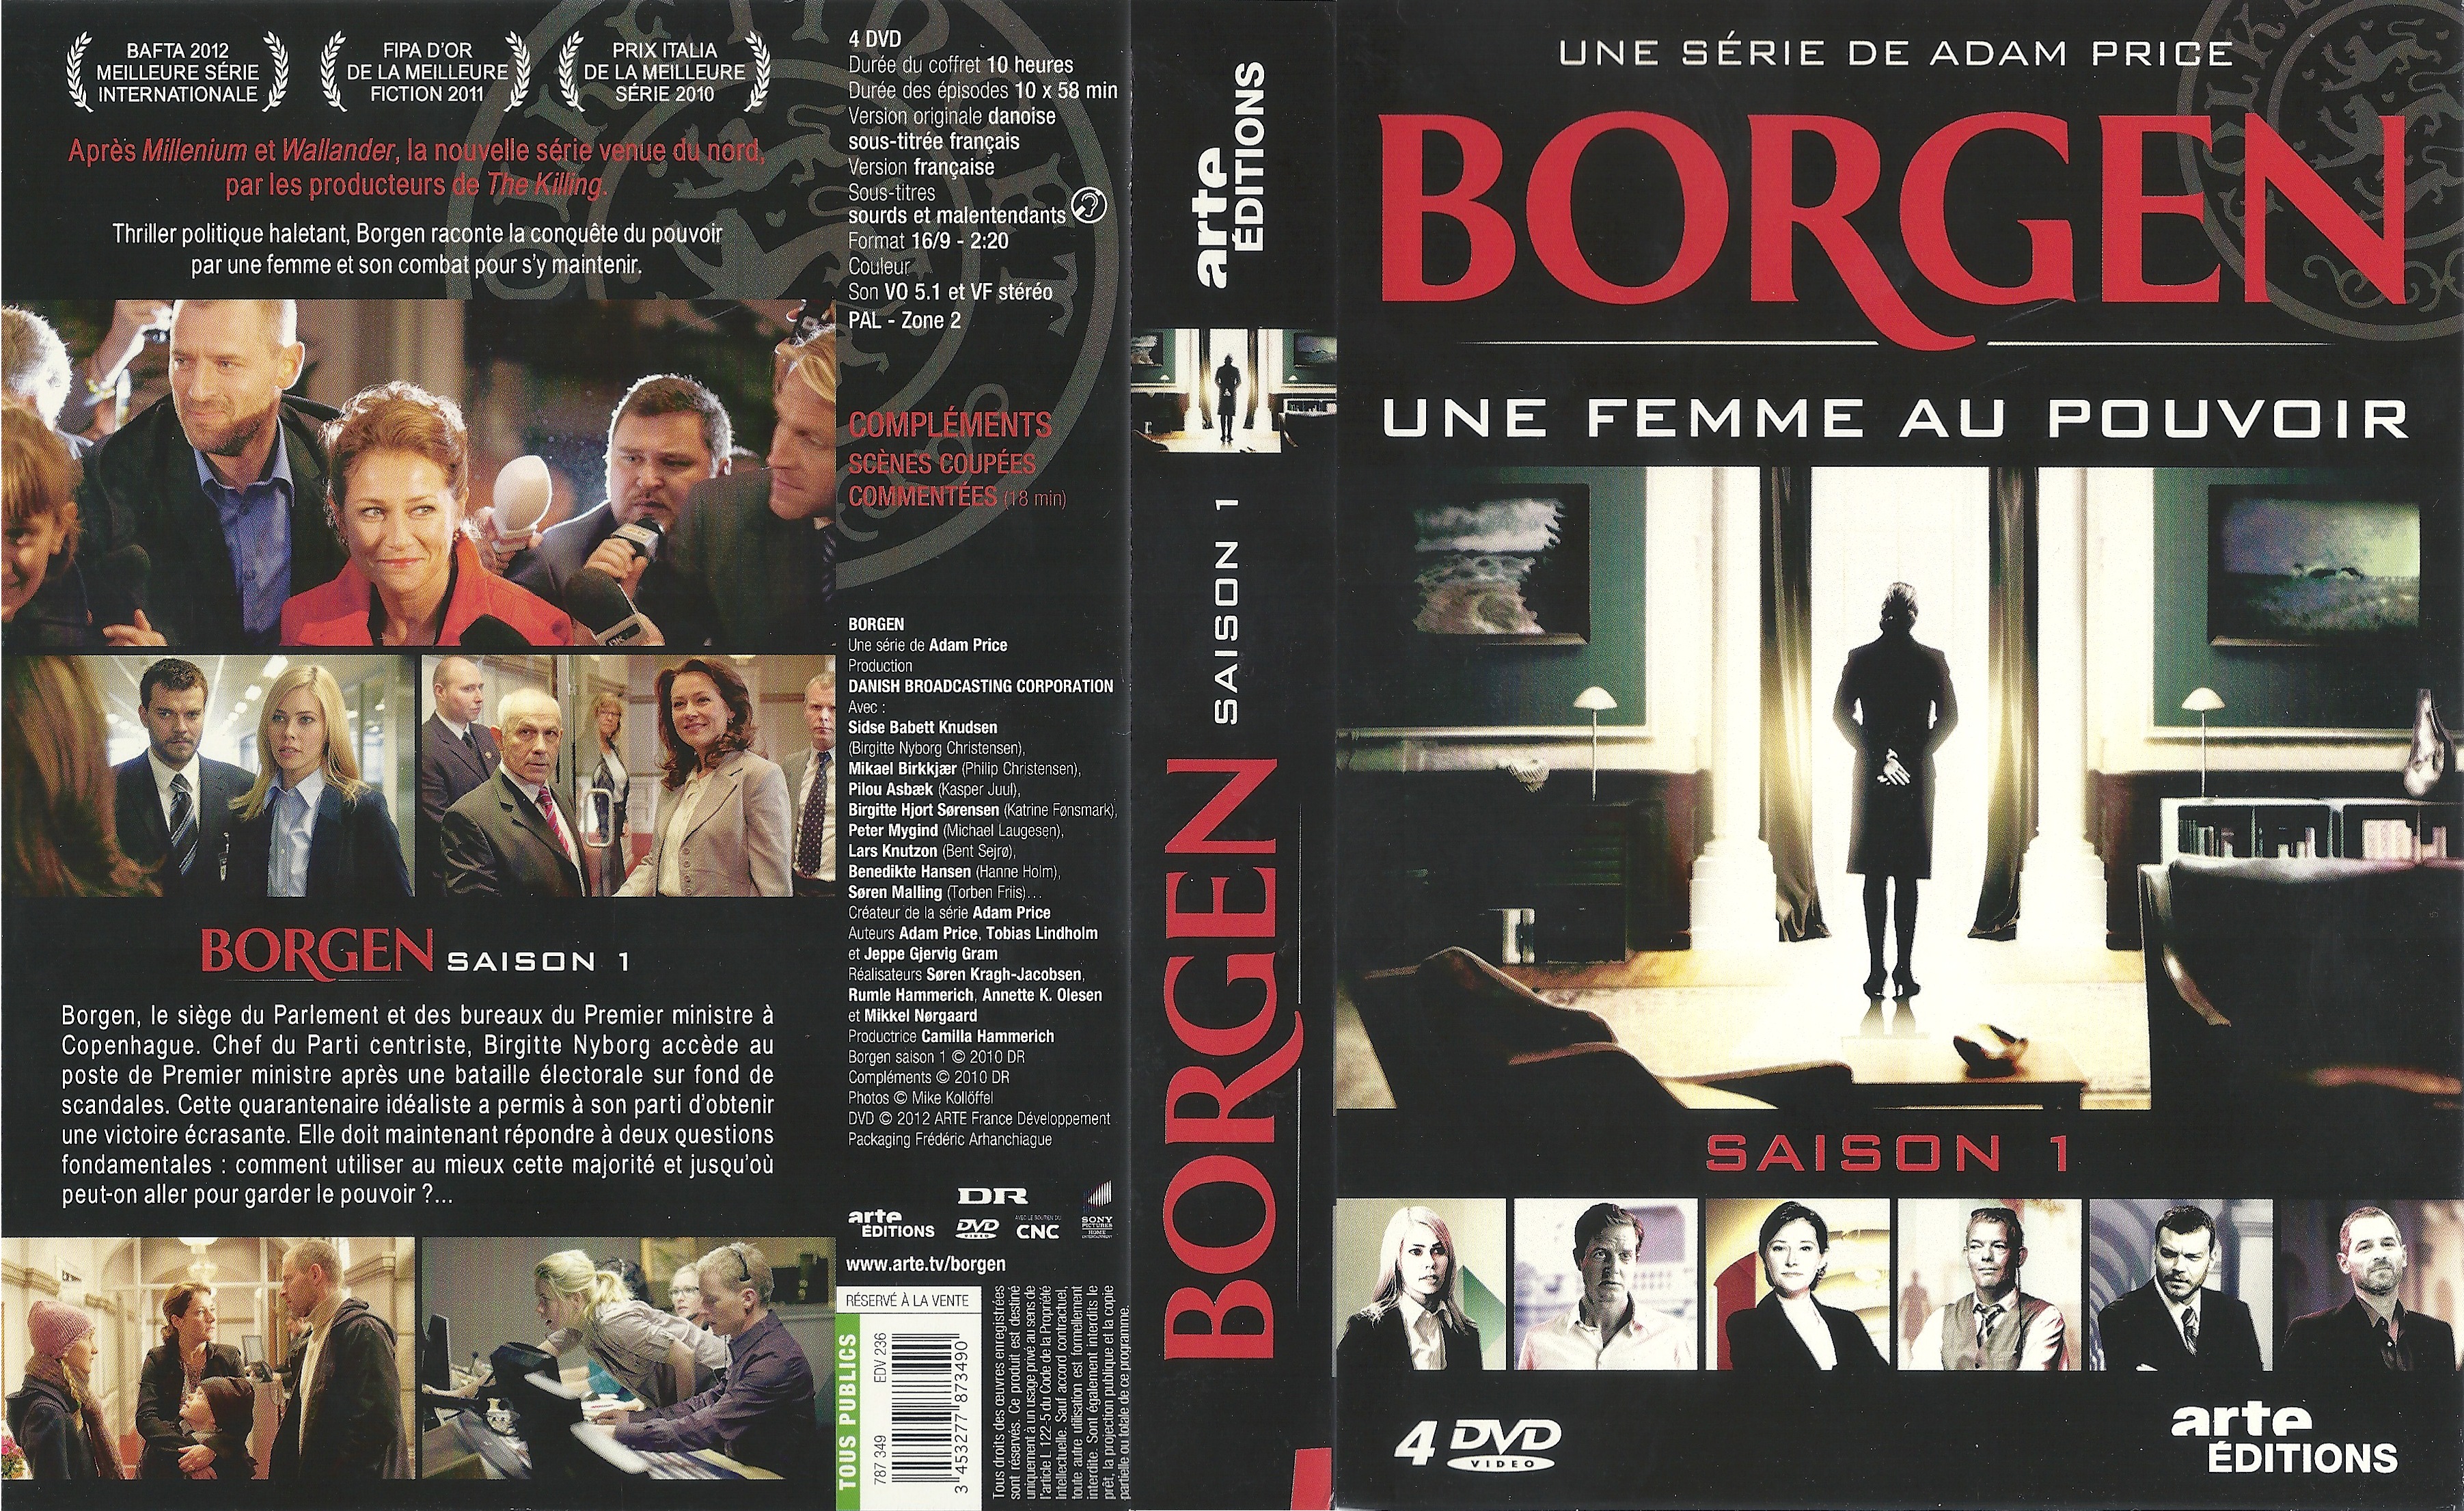 Jaquette DVD Borgen Saison 1